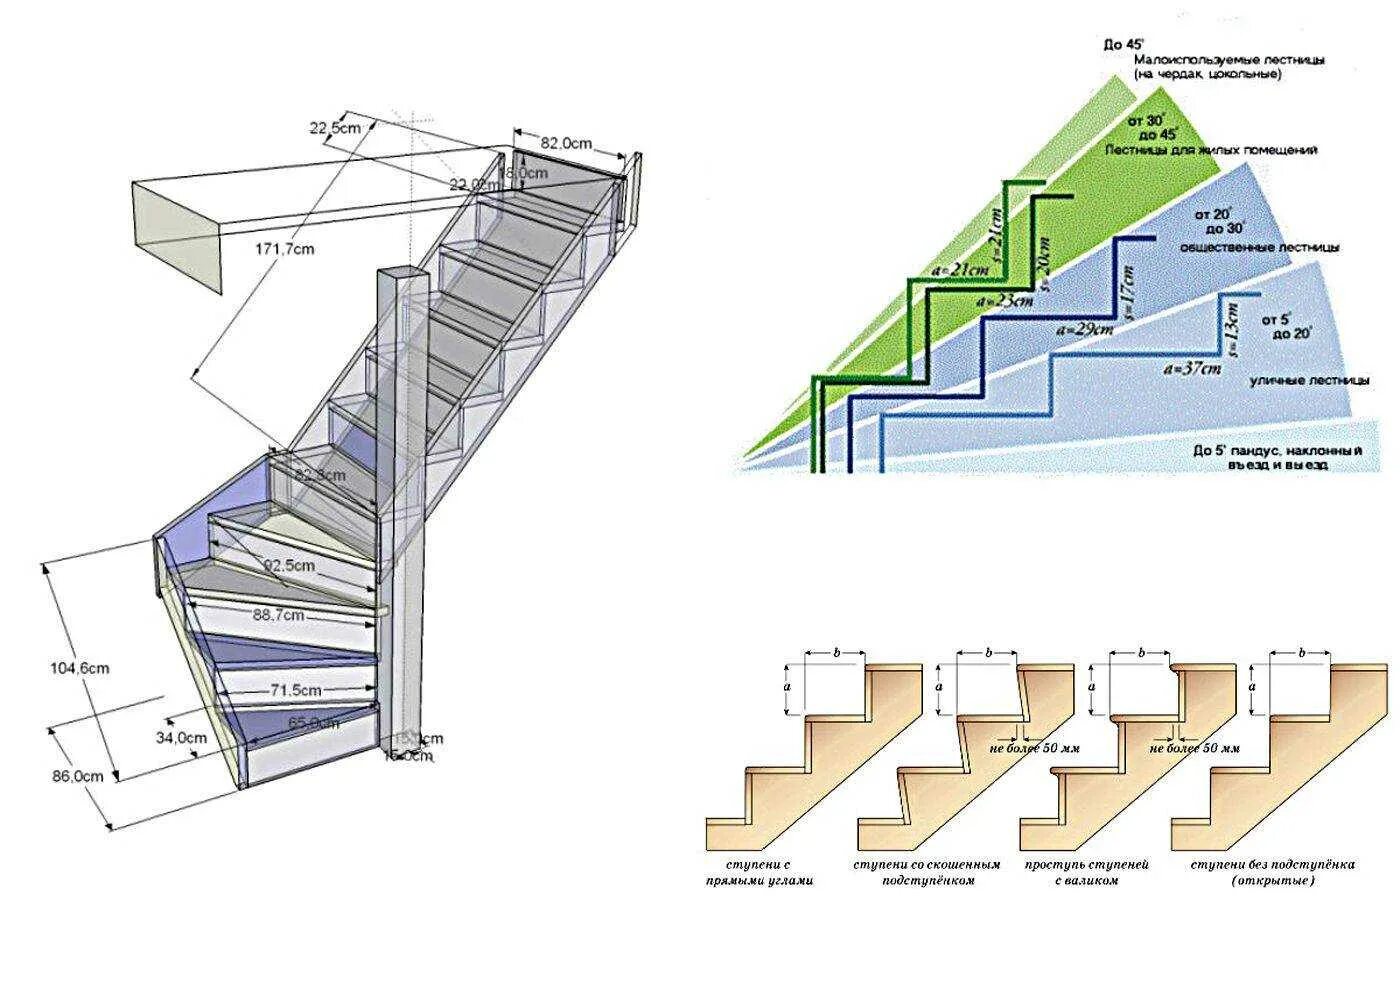 Ступени в лестницы 200 мм ширина. Как рассчитать Размеры лестницы на 2 этаж. Высота ступеней максимальная для лестницы 45. Как правильно рассчитать лестницу на 2 этаж. Расчет мощности развиваемой при подъеме по лестнице